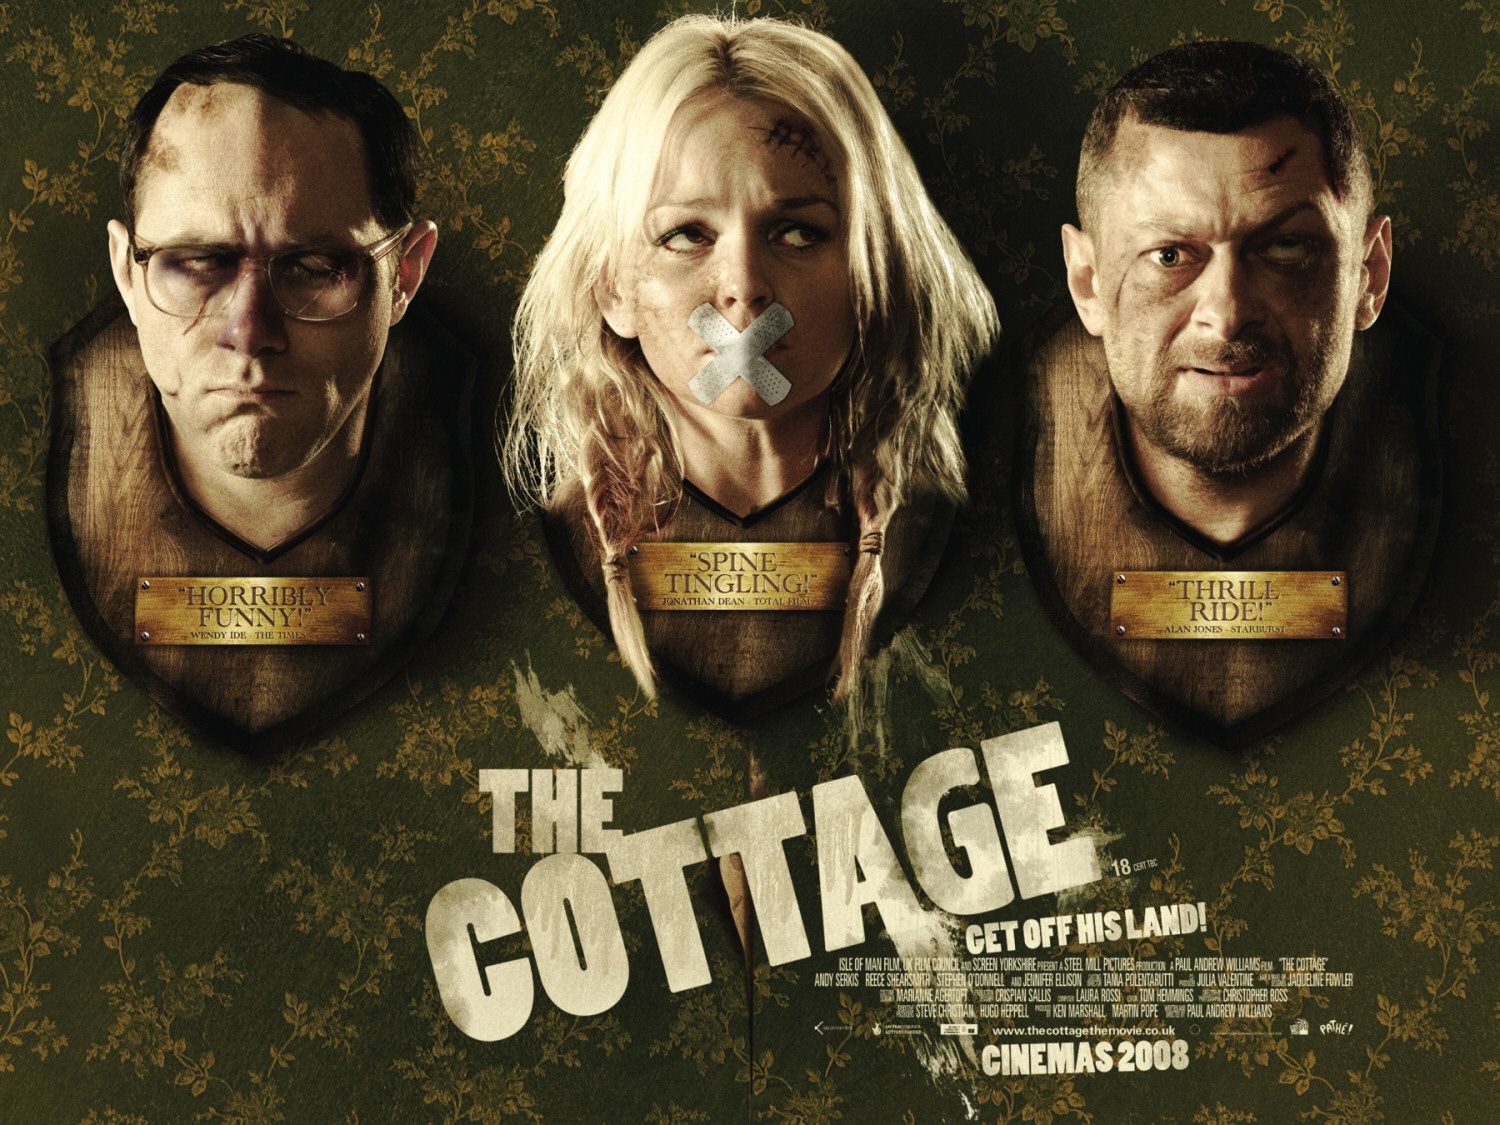 Западня / The Cottage (2008) отзывы. Рецензии. Новости кино. Актеры фильма Западня. Отзывы о фильме Западня